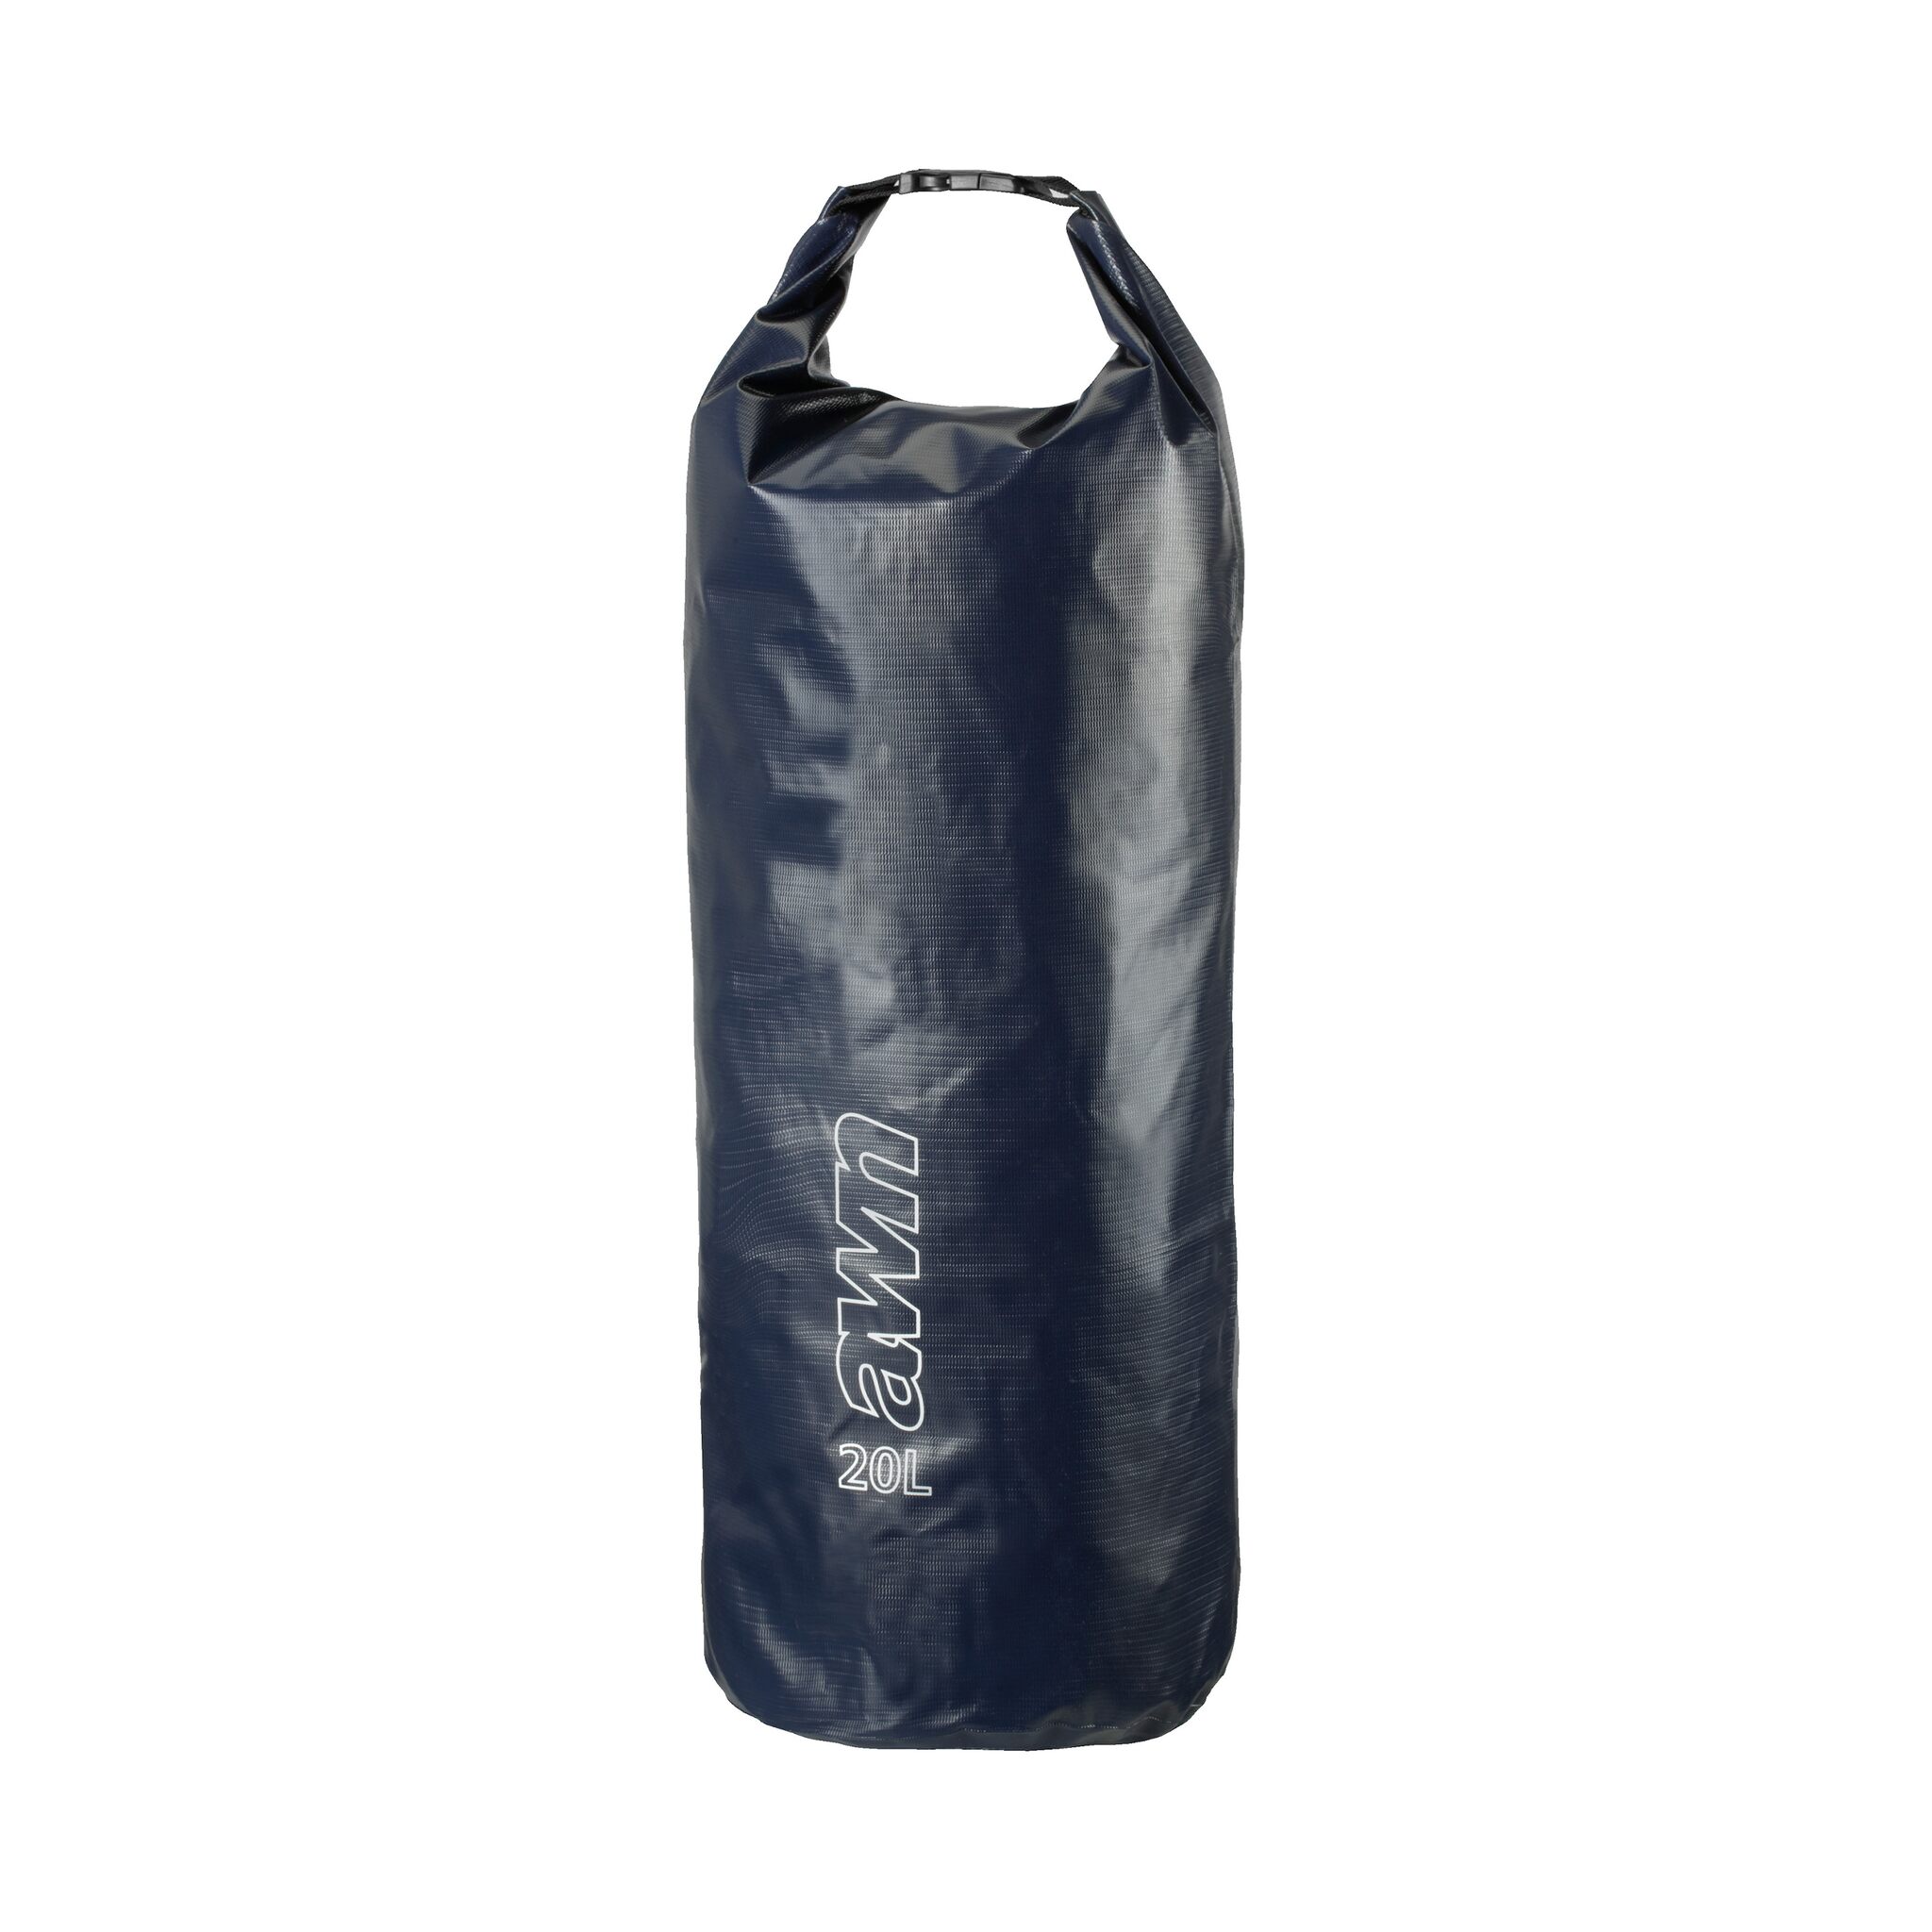 awn Packsack wasserdicht - 20 Liter - Seesack - Packtasche für Wassersport, Camping & Outdoor 